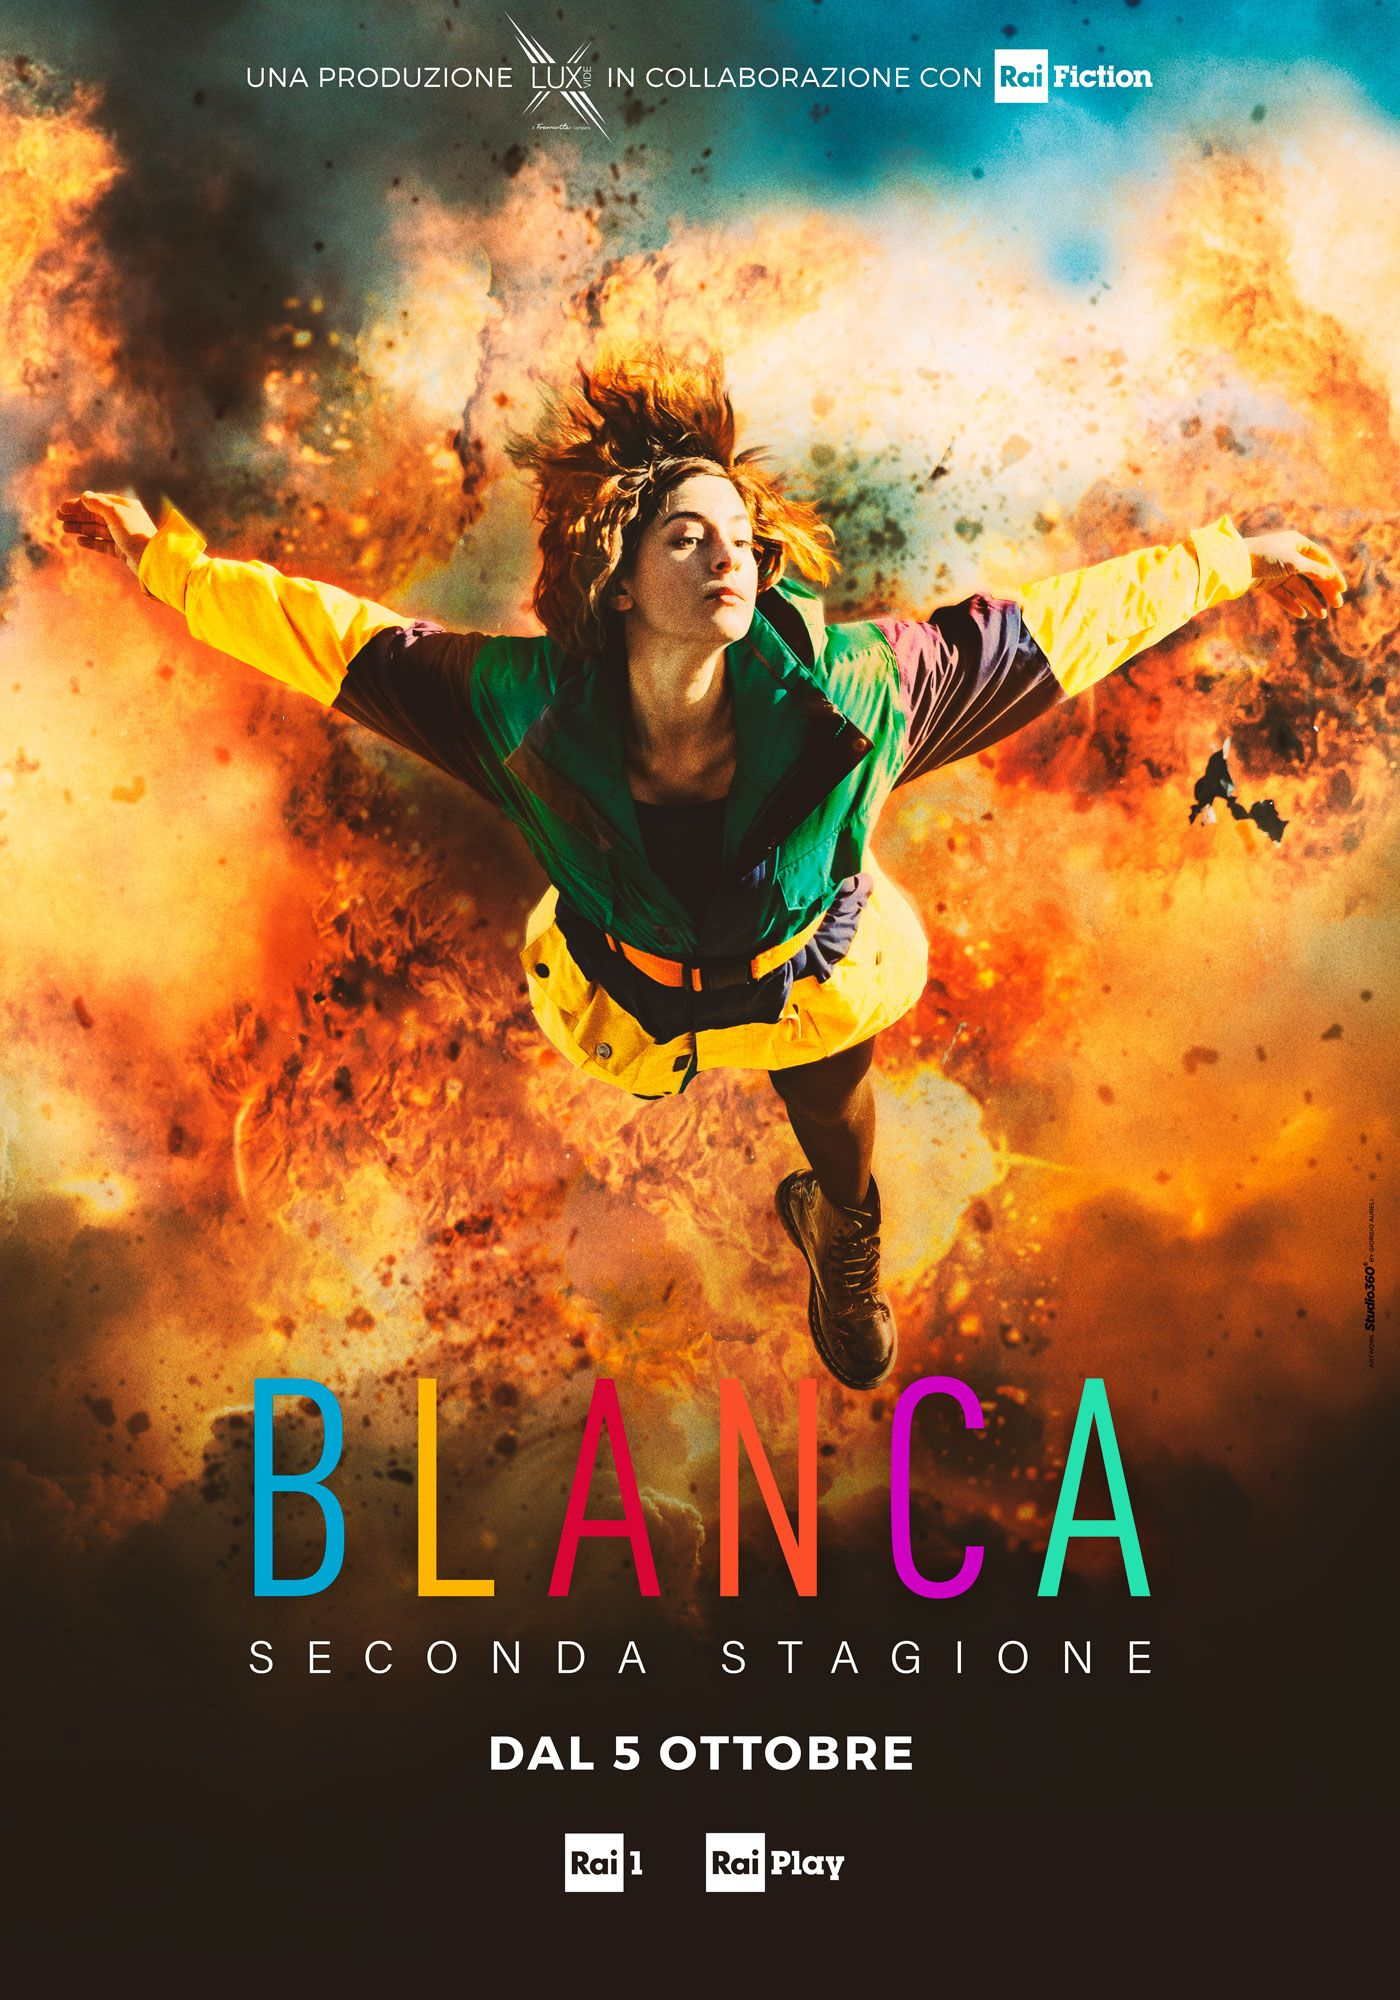 Blanca 2 è già Sotto attacco: titolo, trama e anticipazioni prima puntata- immagine 5